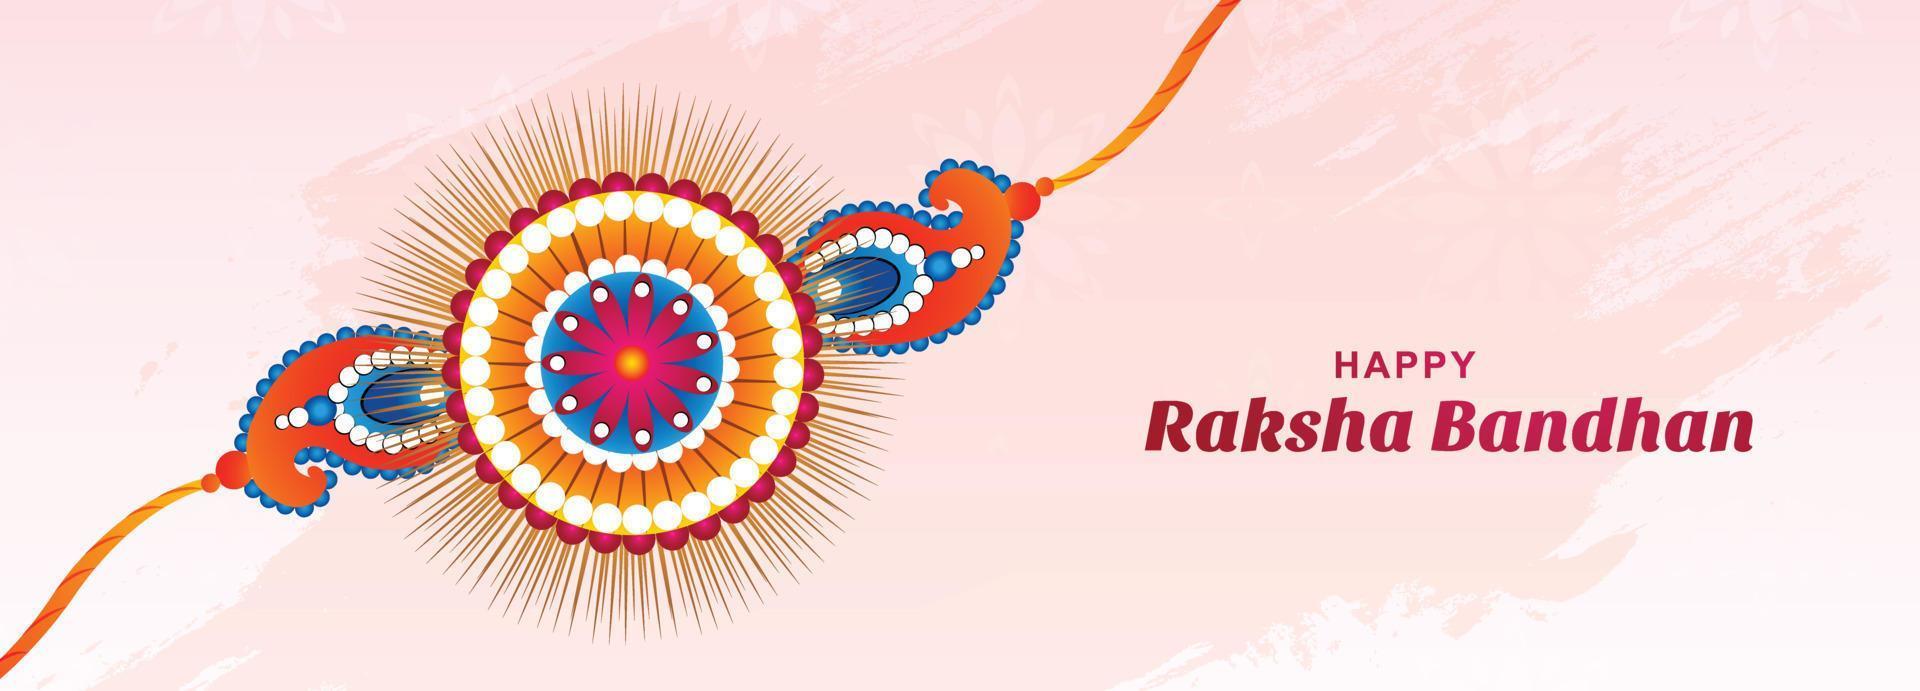 cartão festival raksha bandhan com design de banner rakhi vetor